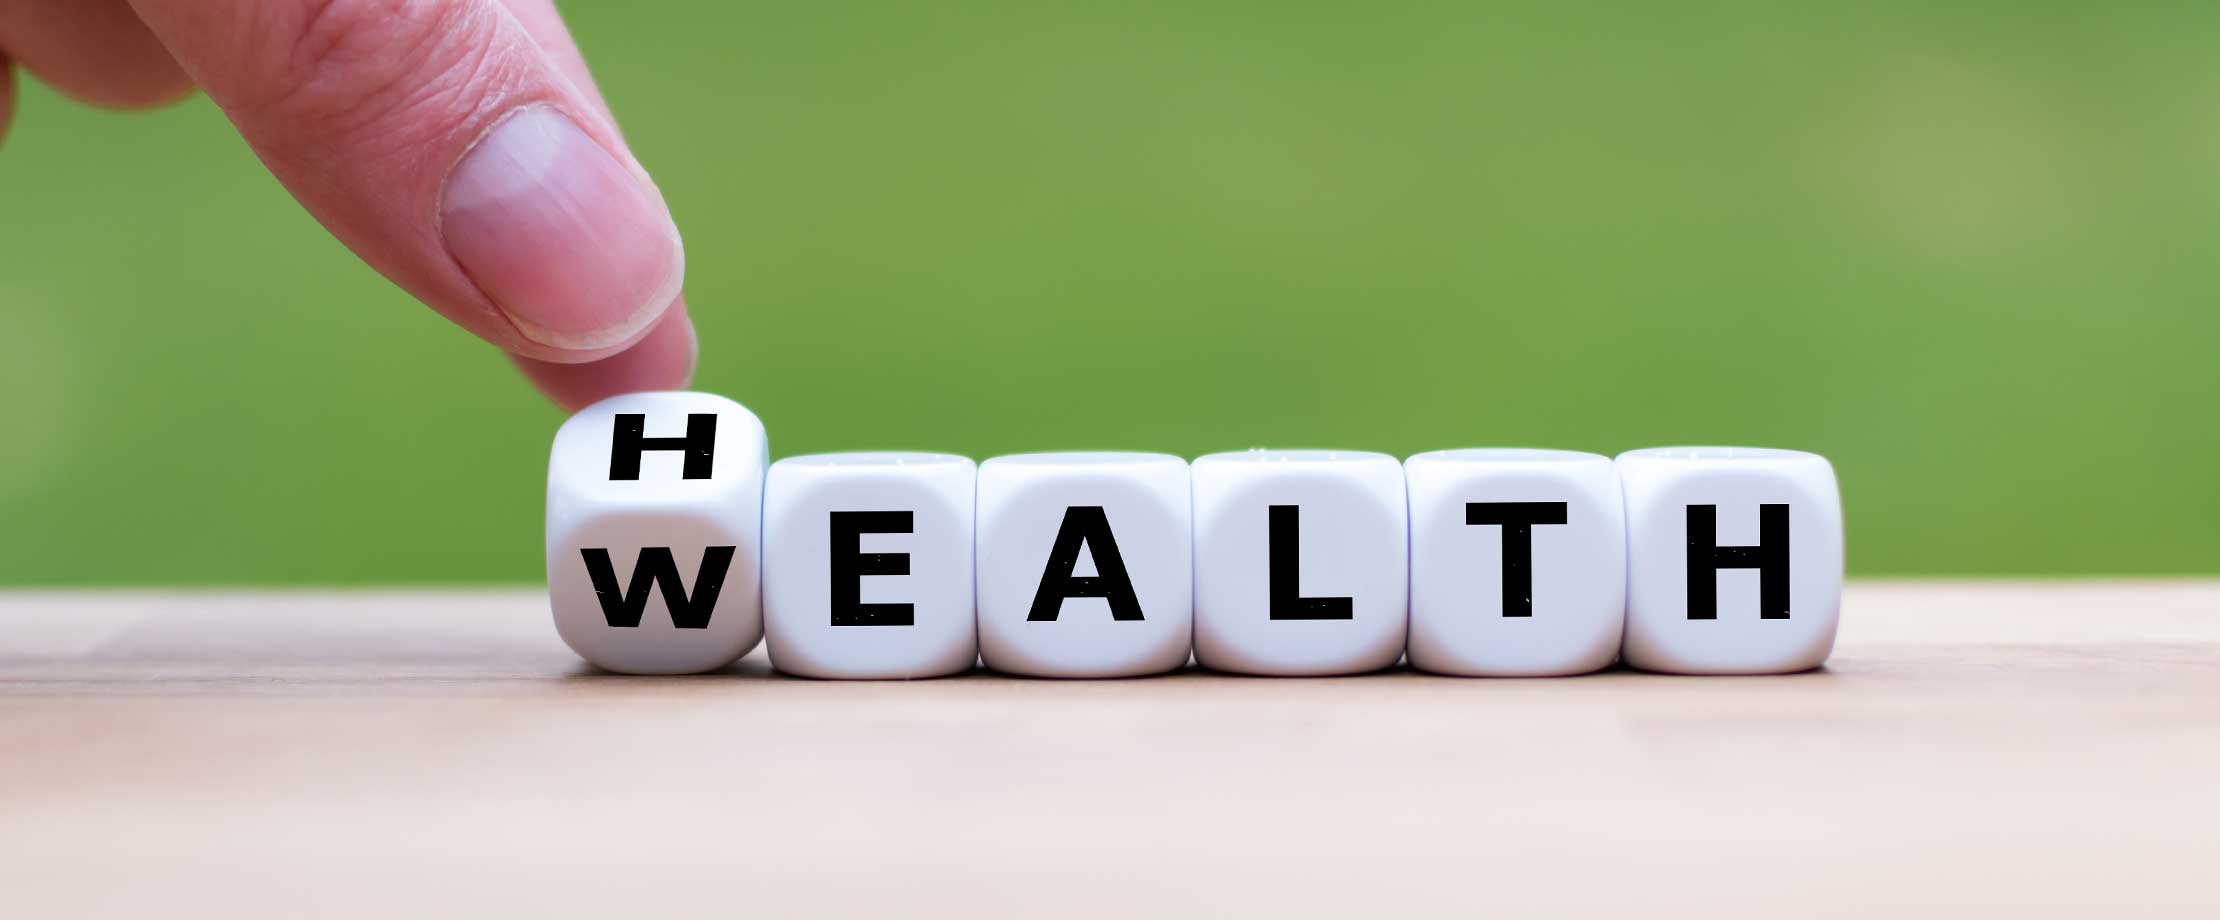 Auf einem Tisch vor einem grünen Hintergrund liegen Würfel, auf denen Buchstaben abgebildet sind. Daraus ergeben die Wörter „Wealth“ und „Health“.